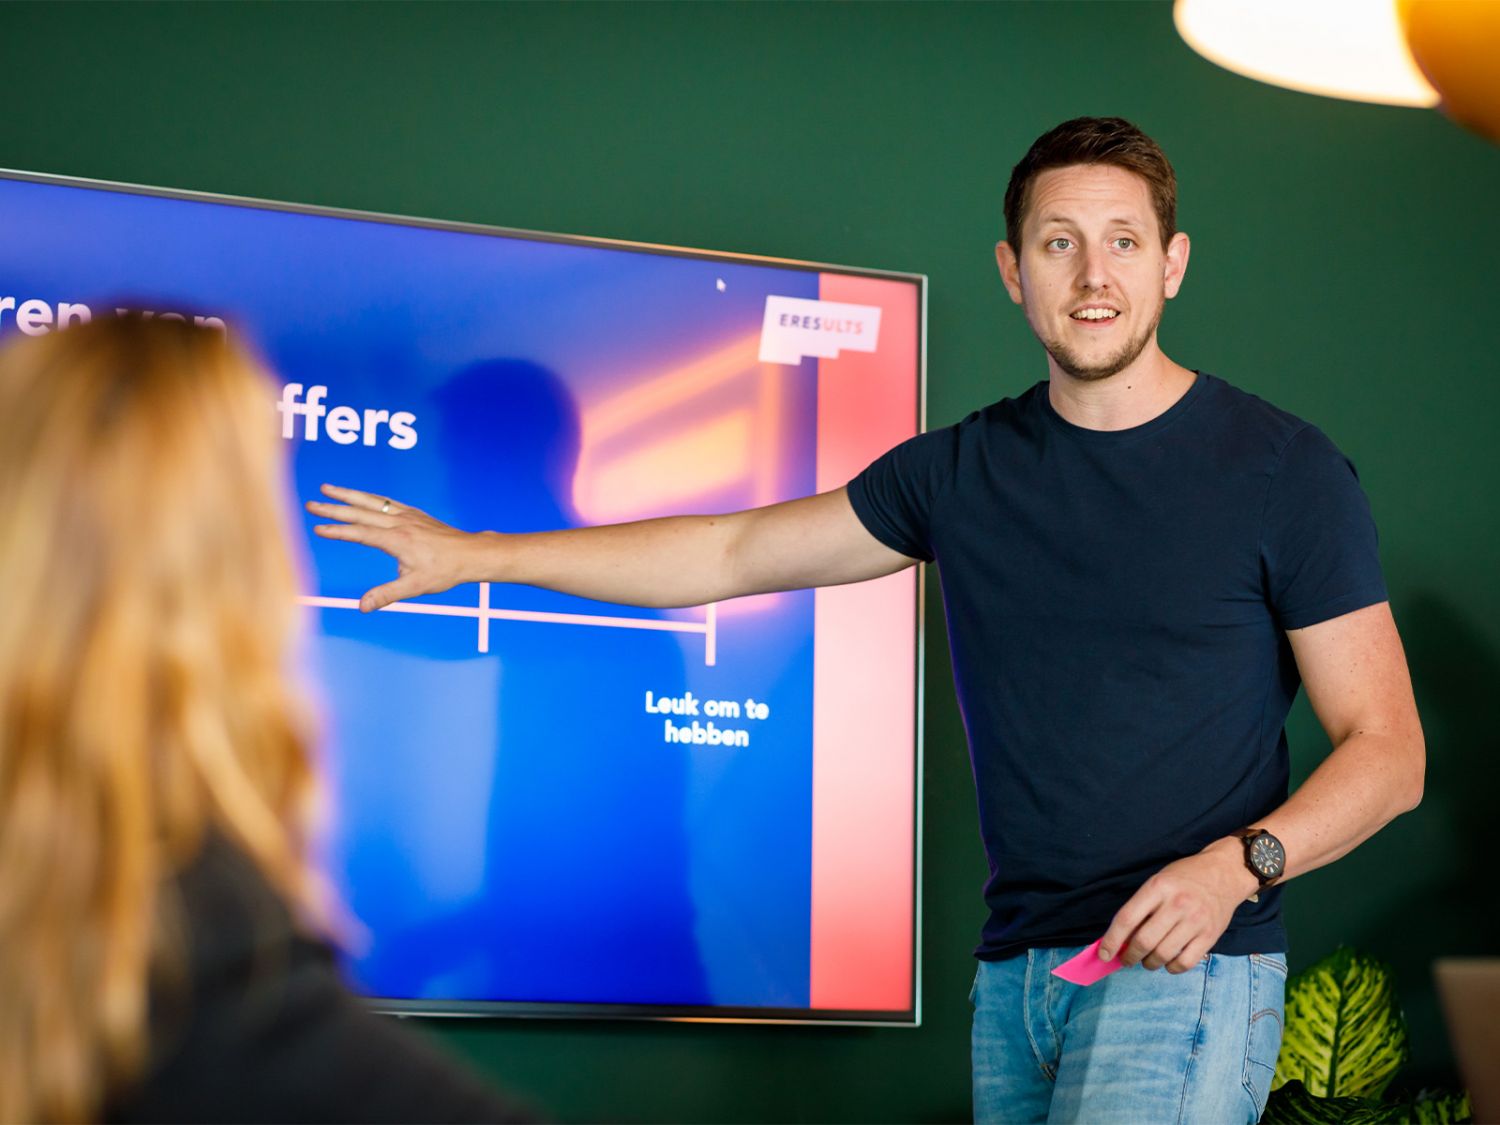 Peter houdt tijdens een workshop een presentatie over de waardepropositie van een klant